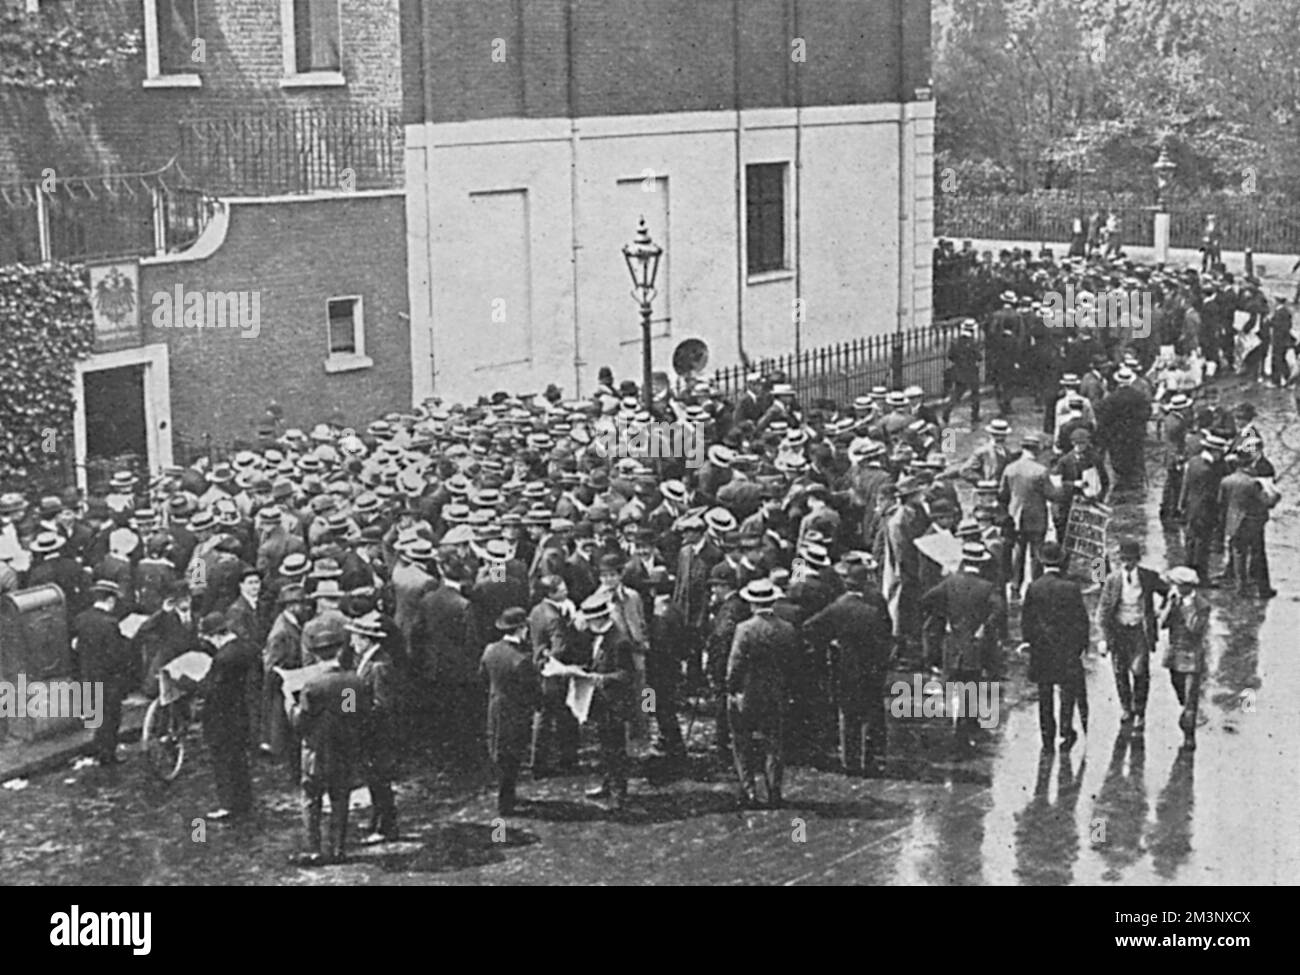 Al loro Consolato a Bedford Place, Londra, i tedeschi si riuniscono seguendo l'ordine di mobilitazione. La Germania ha dichiarato guerra alla Russia il 1 agosto. Data: Agosto 1914 Foto Stock